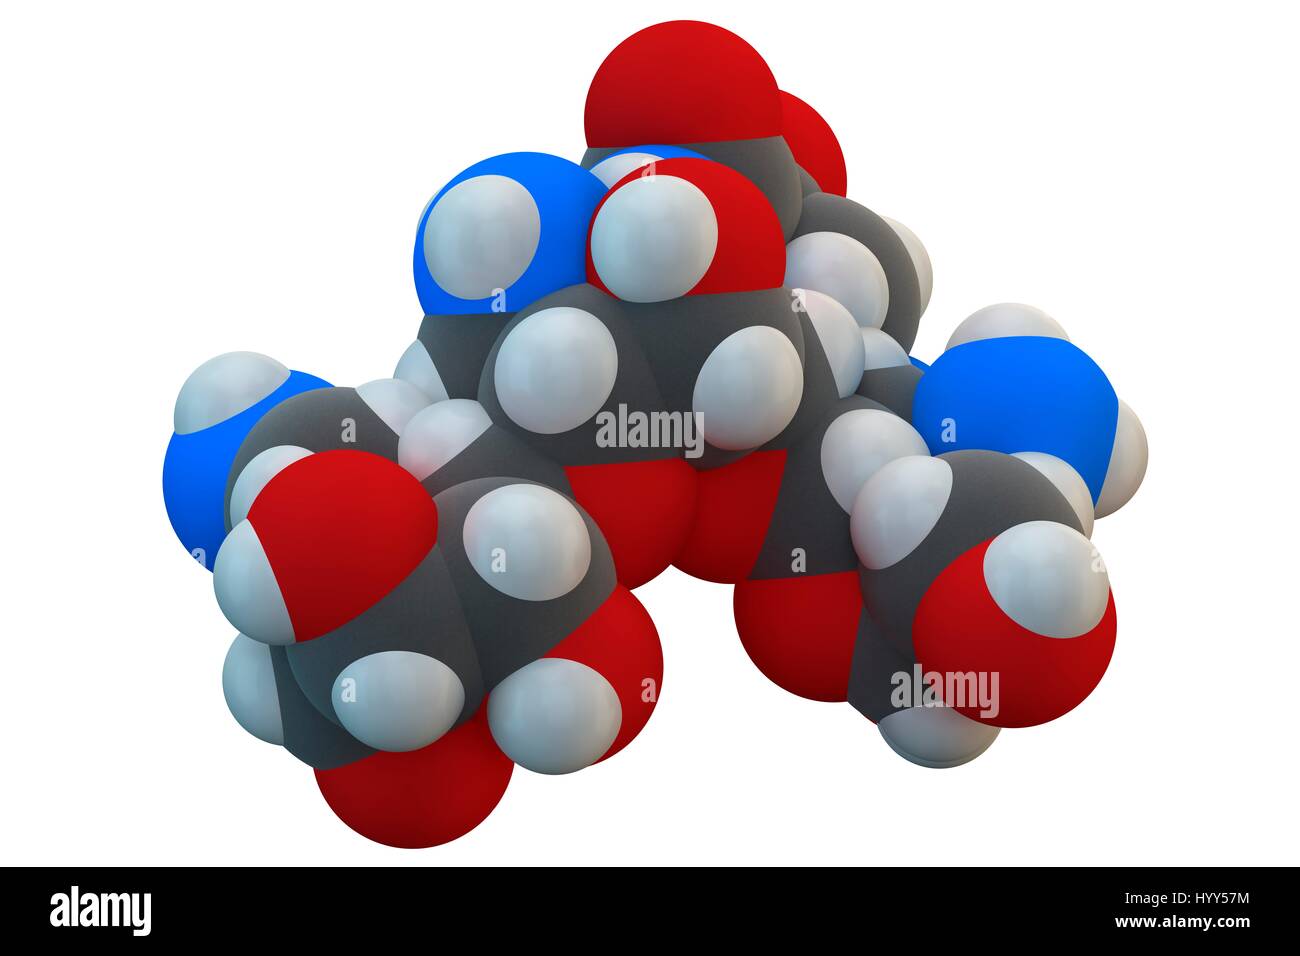 Molécule antibiotique aminoglycoside amikacine. Principalement utilisé comme traitement de dernier recours de bactéries à Gram négatif. La formule chimique est C22H43N5O13. Les atomes sont représentés comme des sphères : le carbone (gris), l'hydrogène (blanc), l'azote (bleu), l'oxygène (rouge). L'illustration. Banque D'Images